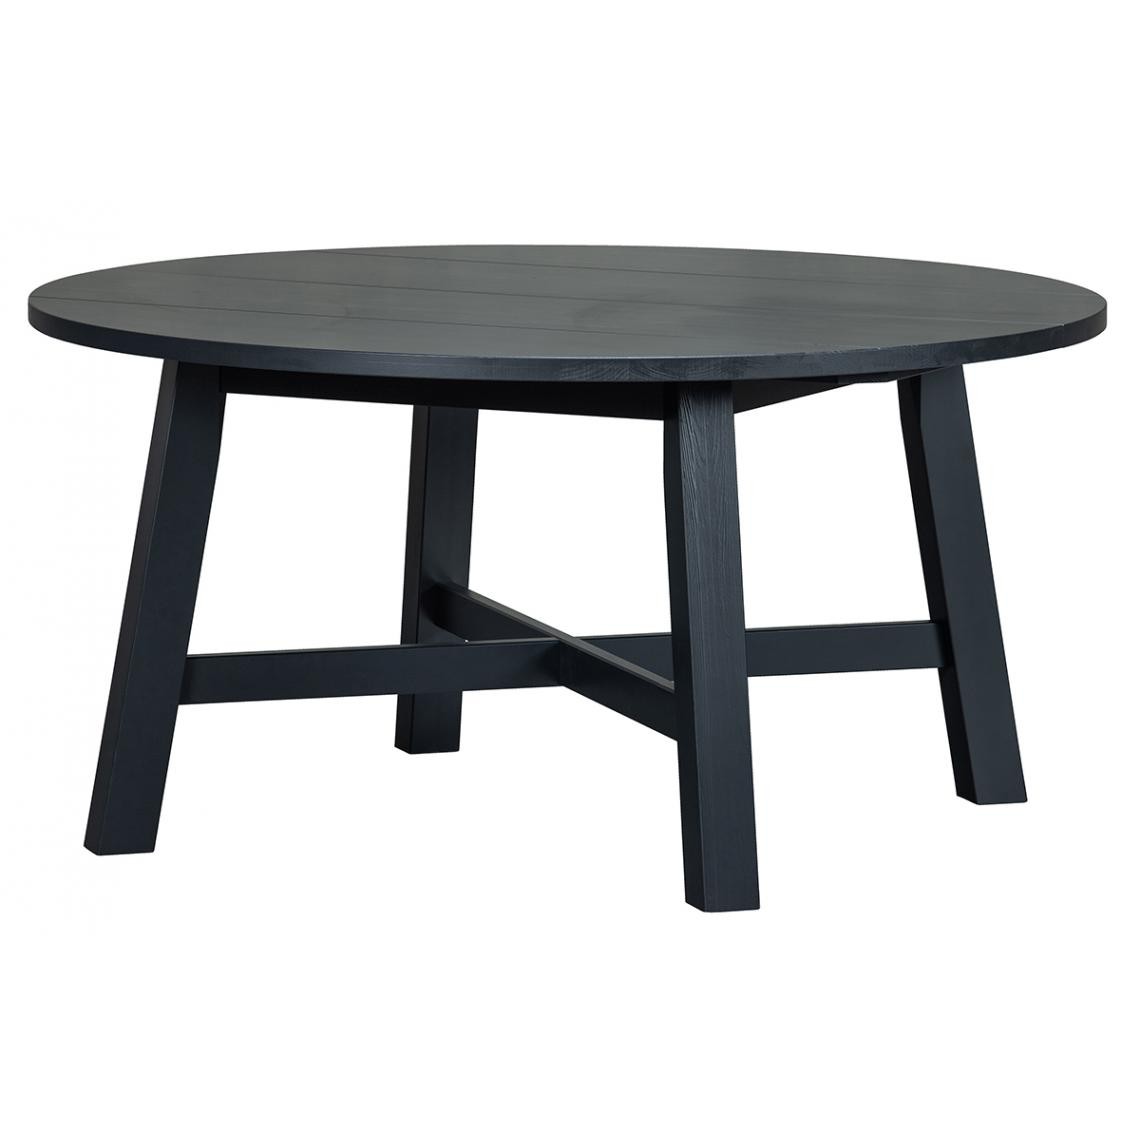 Pegane - Table à manger ronde en pin massif coloris noir mat - Hauteur 75 x ø 150 cm - Tables à manger